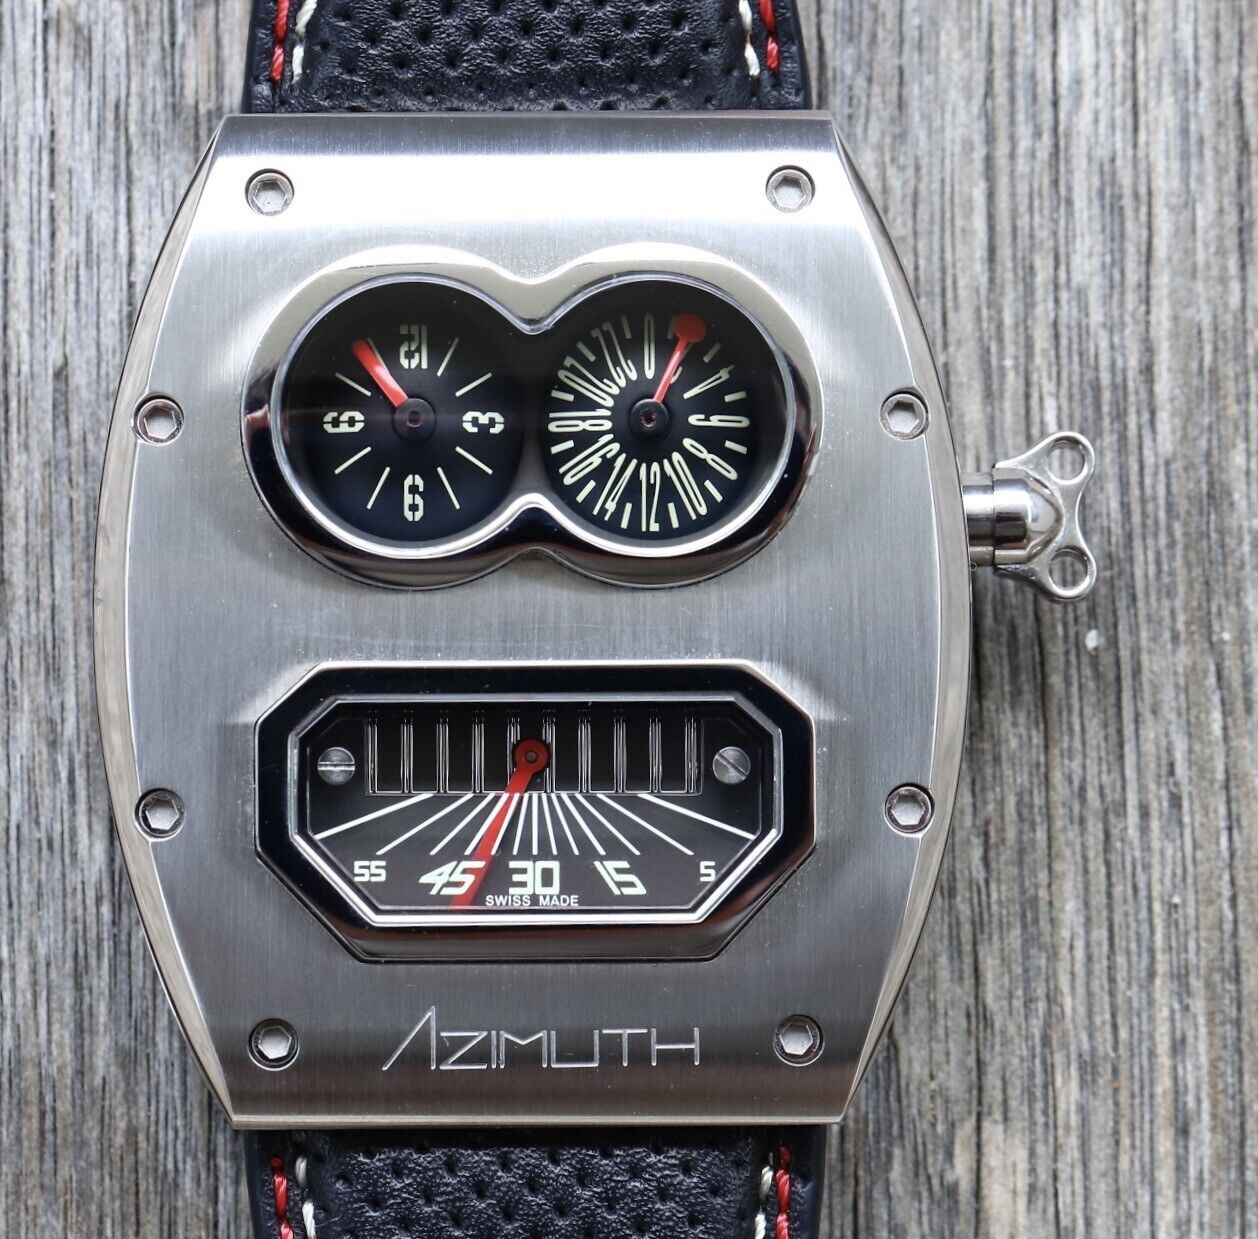 MR. ROBOTO R2 - Azimuth Watch